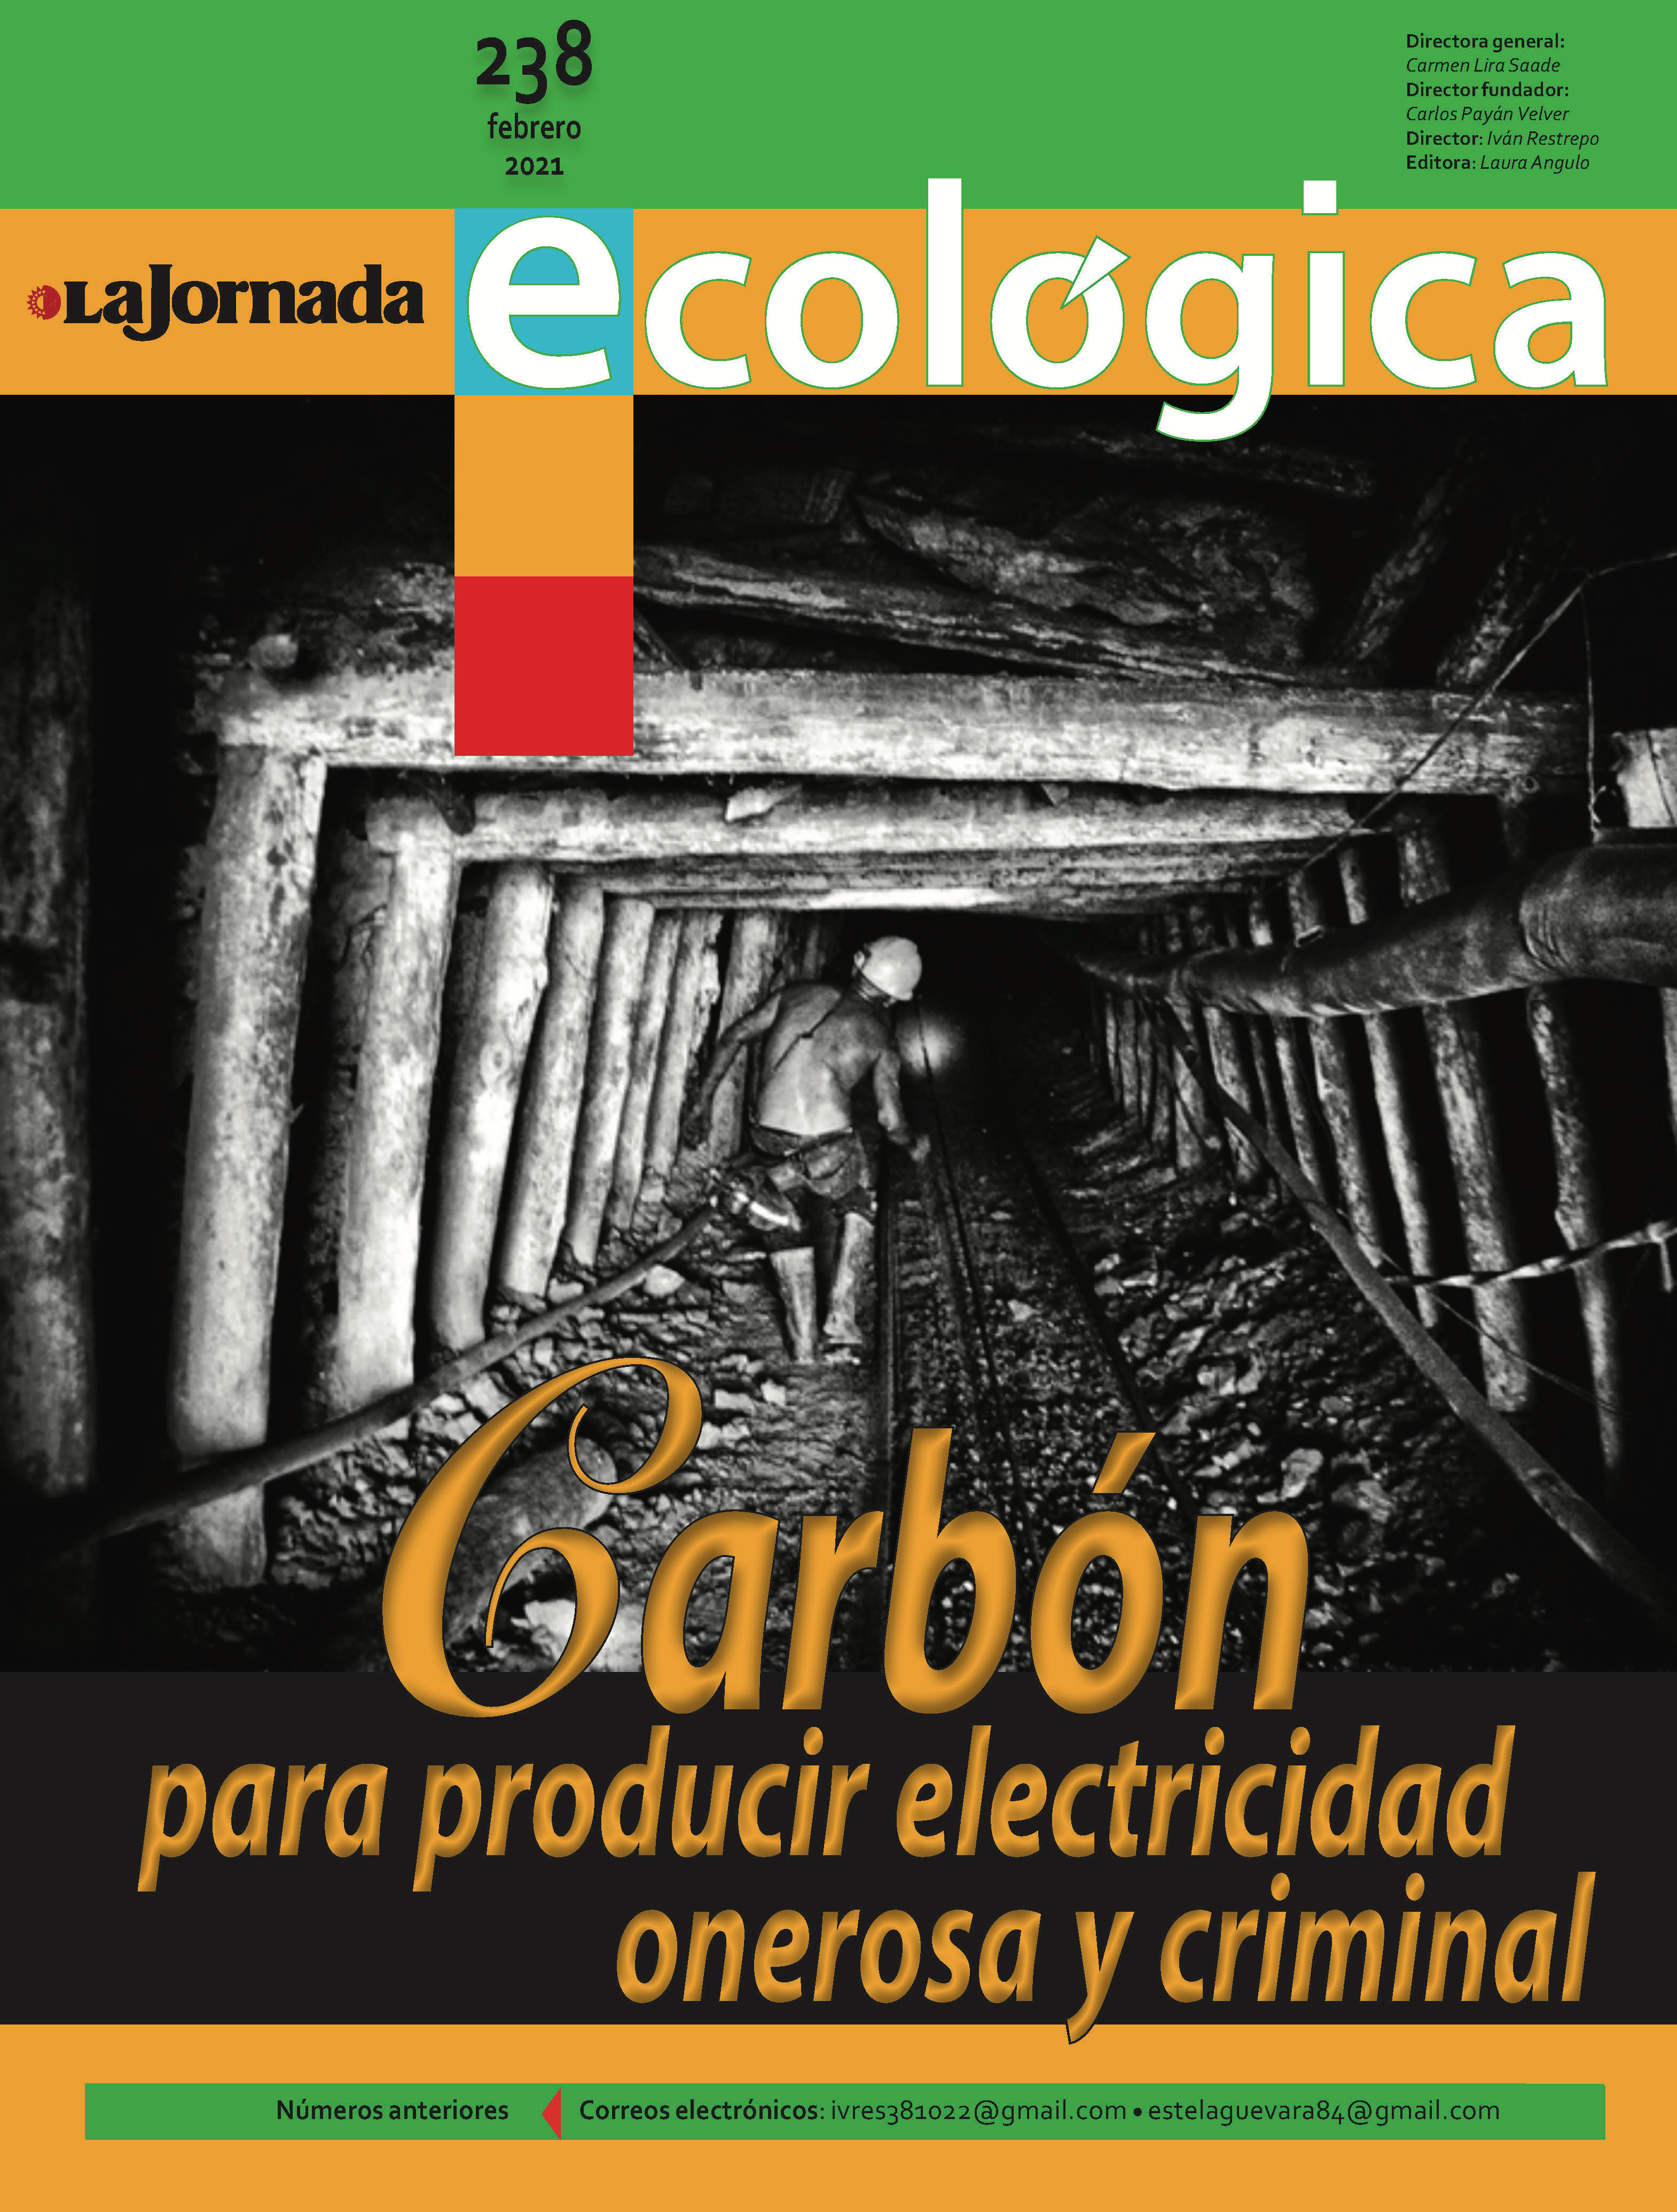 La Jornada Ecológica: Carbón para producir electricidad onerosa y criminal